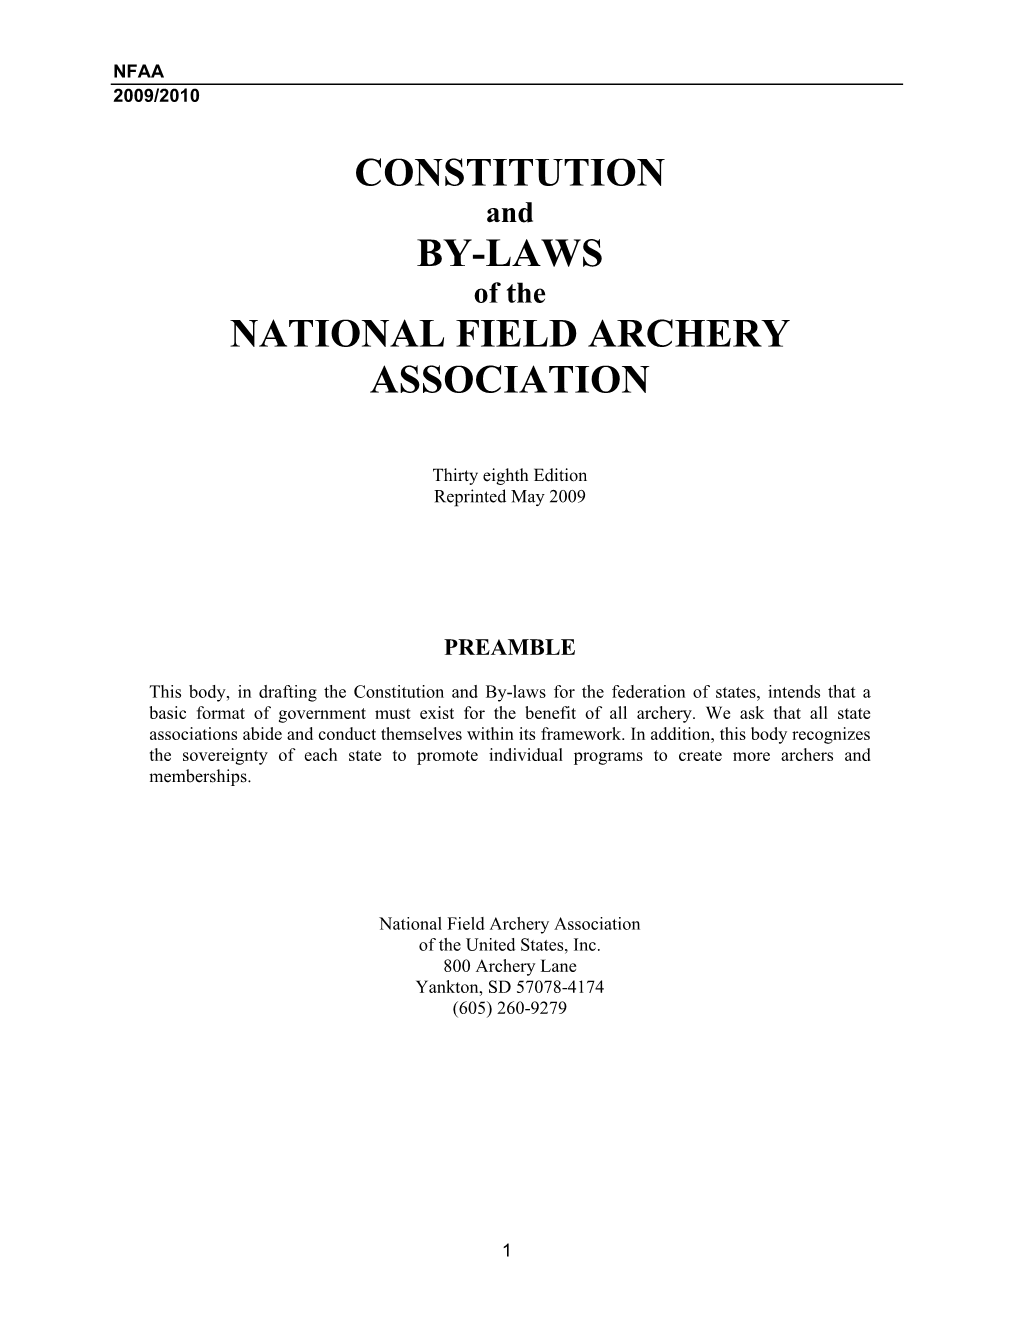 2009/2010 NFAA Rule Book